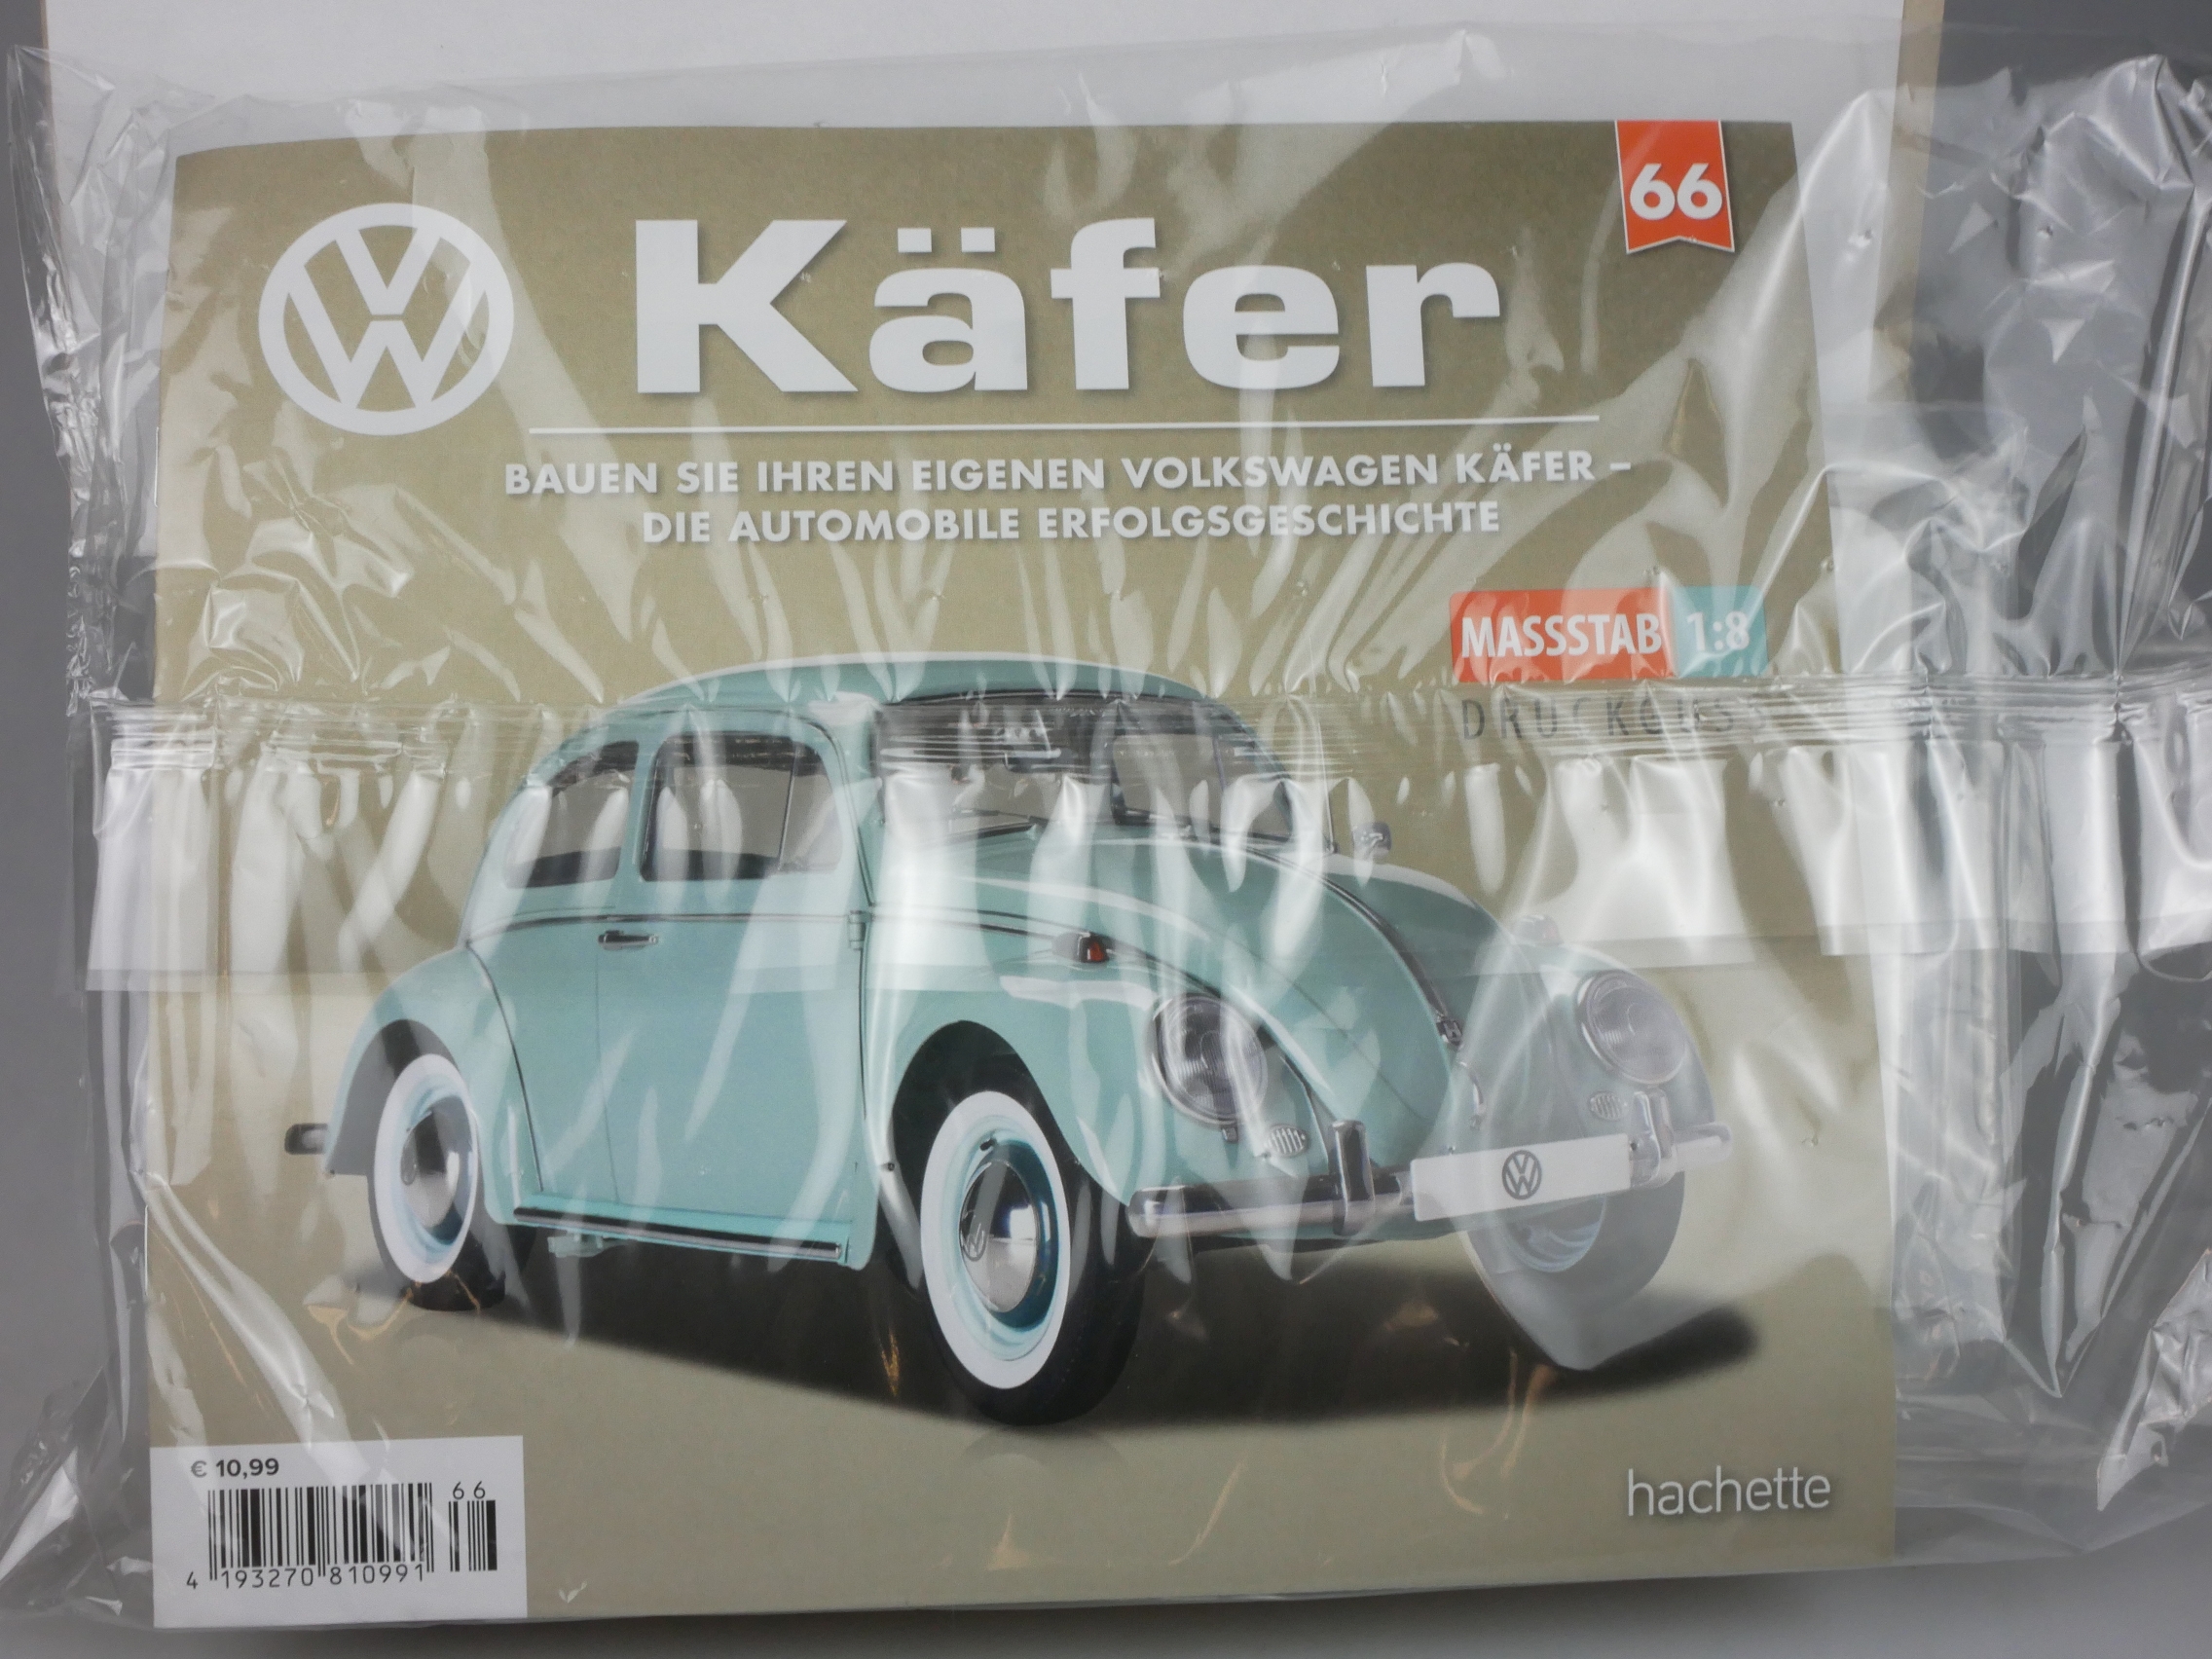  Ausgabe 66 Volkswagen VW Käfer 1/8 Hachette - 126433